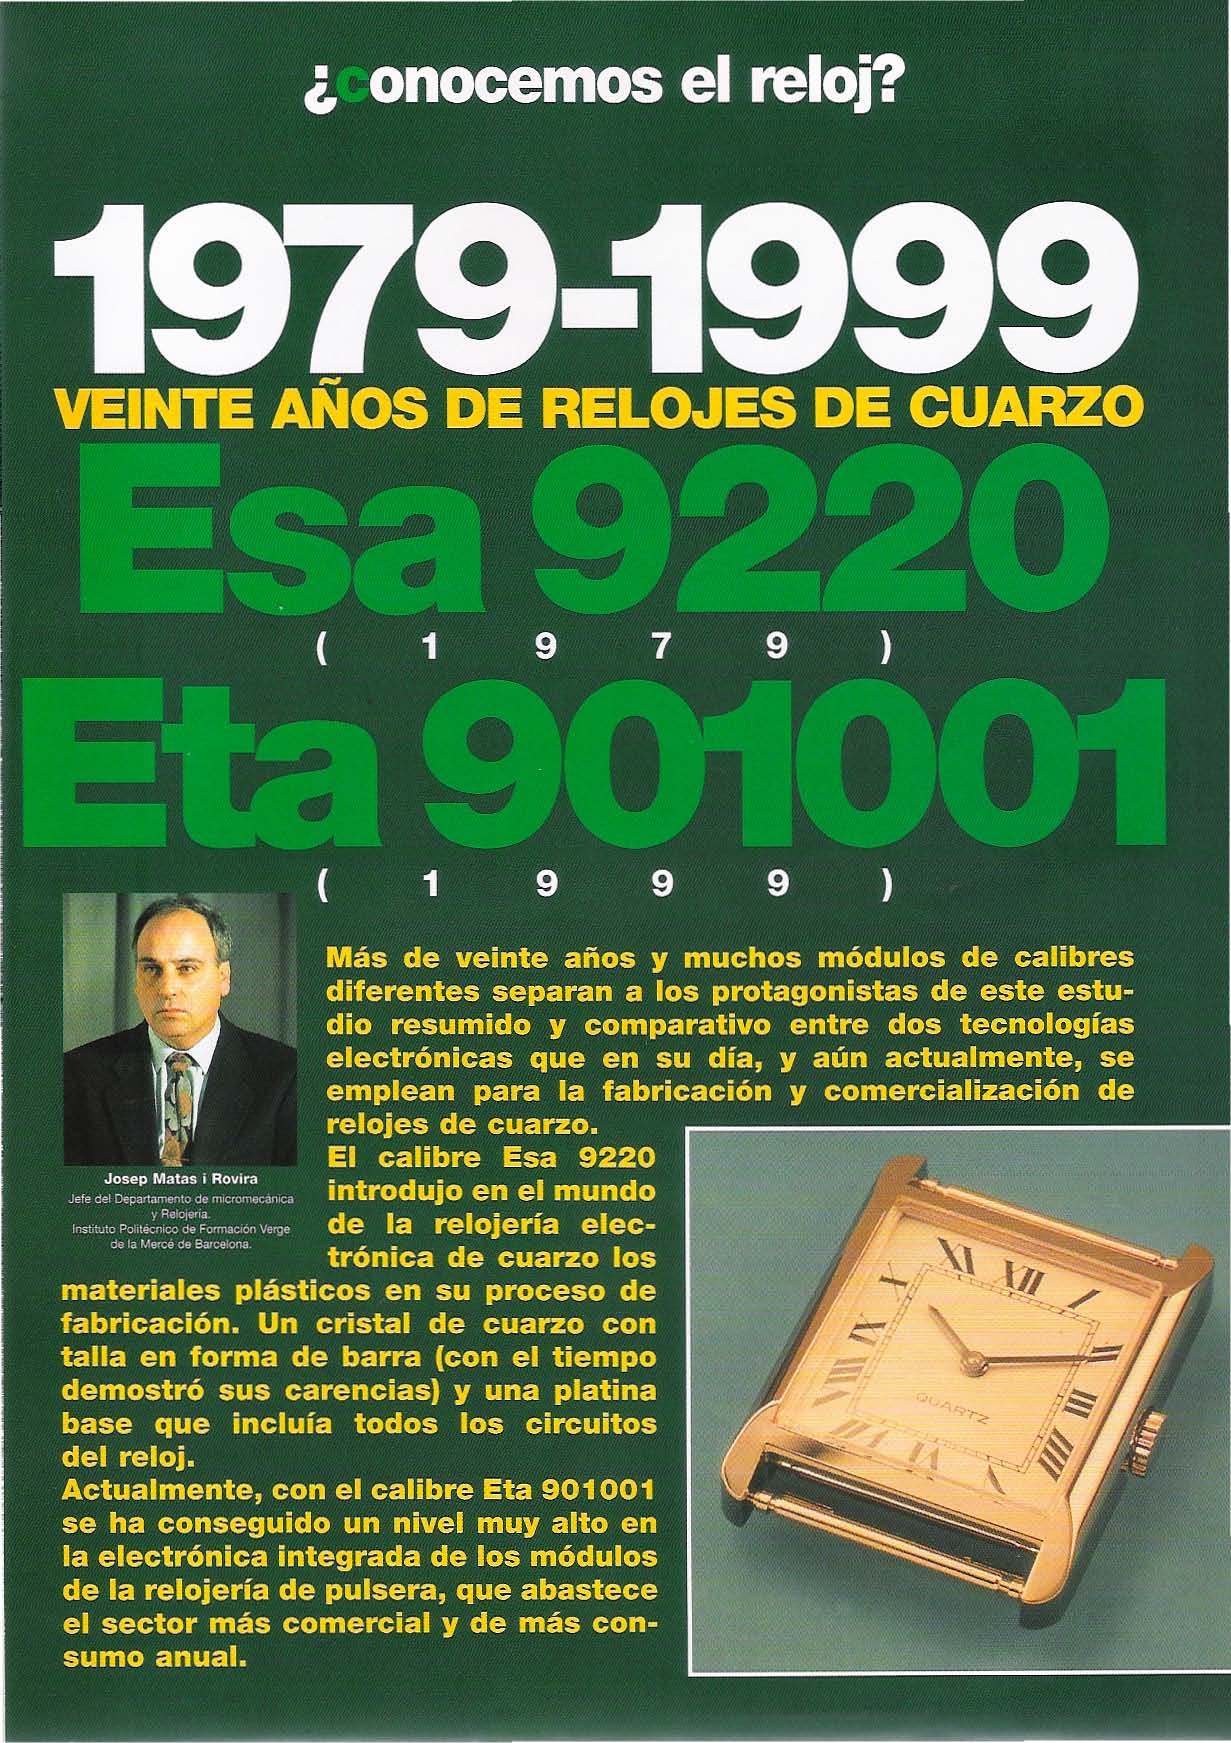 ¿Conocemos el reloj? 1979-1999 veinte años de relojes de cuarzo